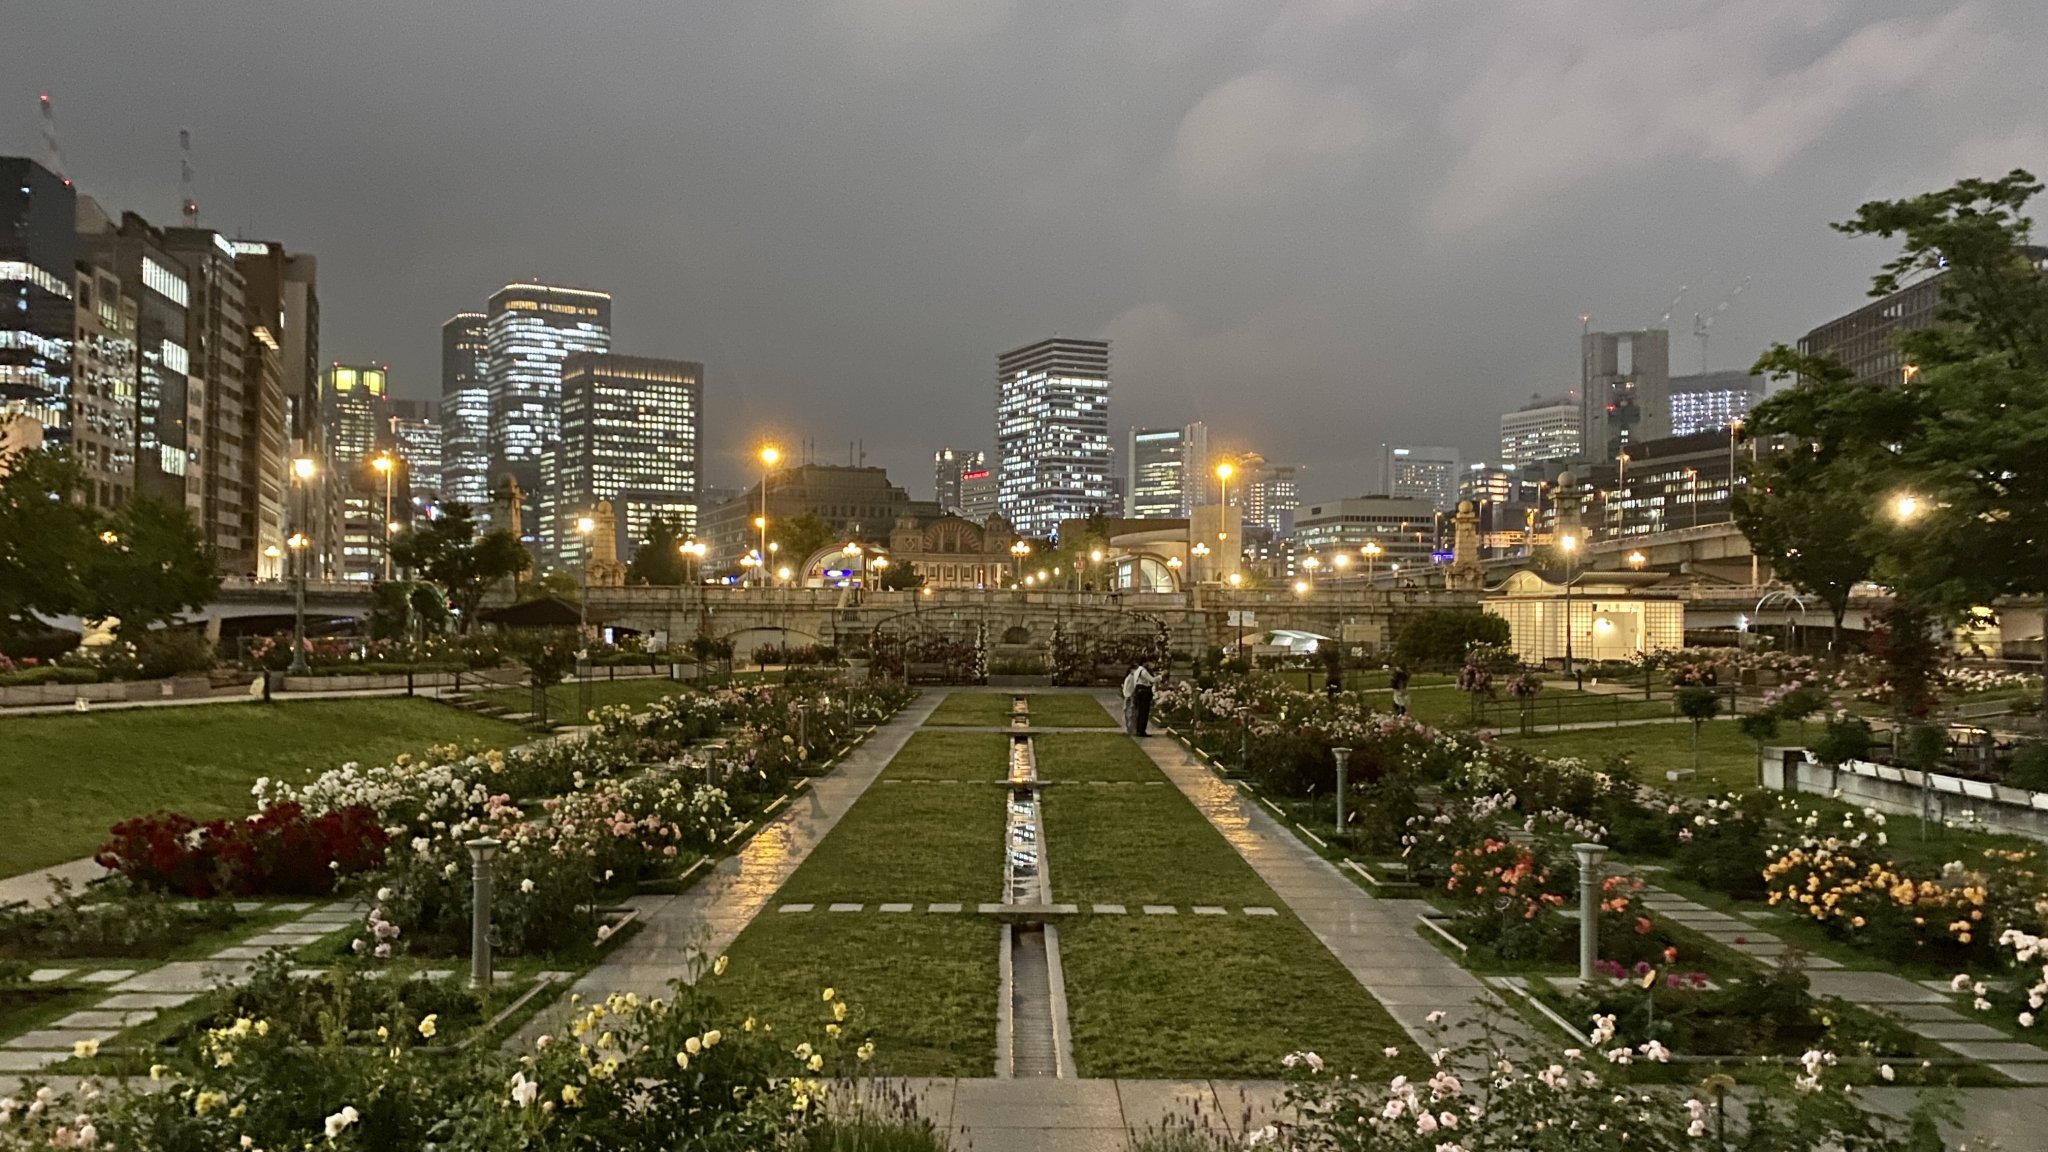 ทั้งหมดประมาณ 5 ของ Rose Gardens ที่ดีที่สุดของญี่ปุ่นญี่ปุ่น